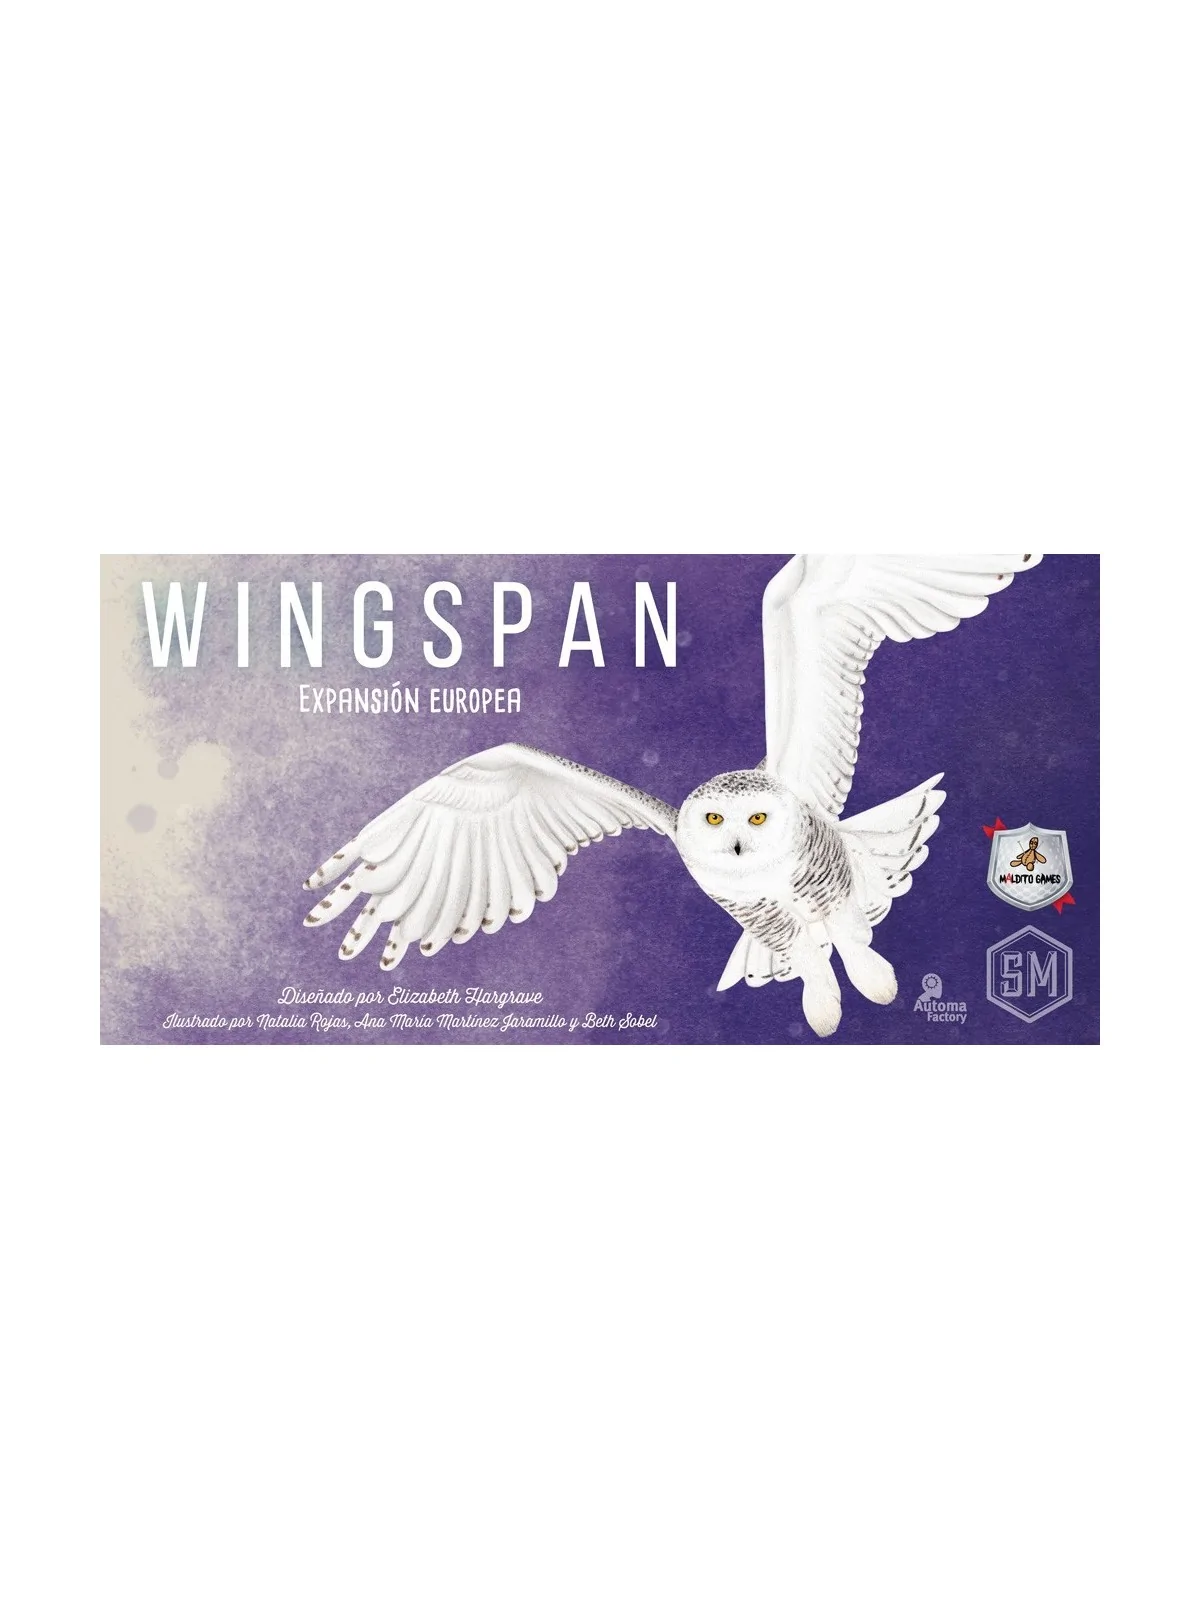 Comprar Wingspan: Expansión Europea barato al mejor precio 22,50 € de 